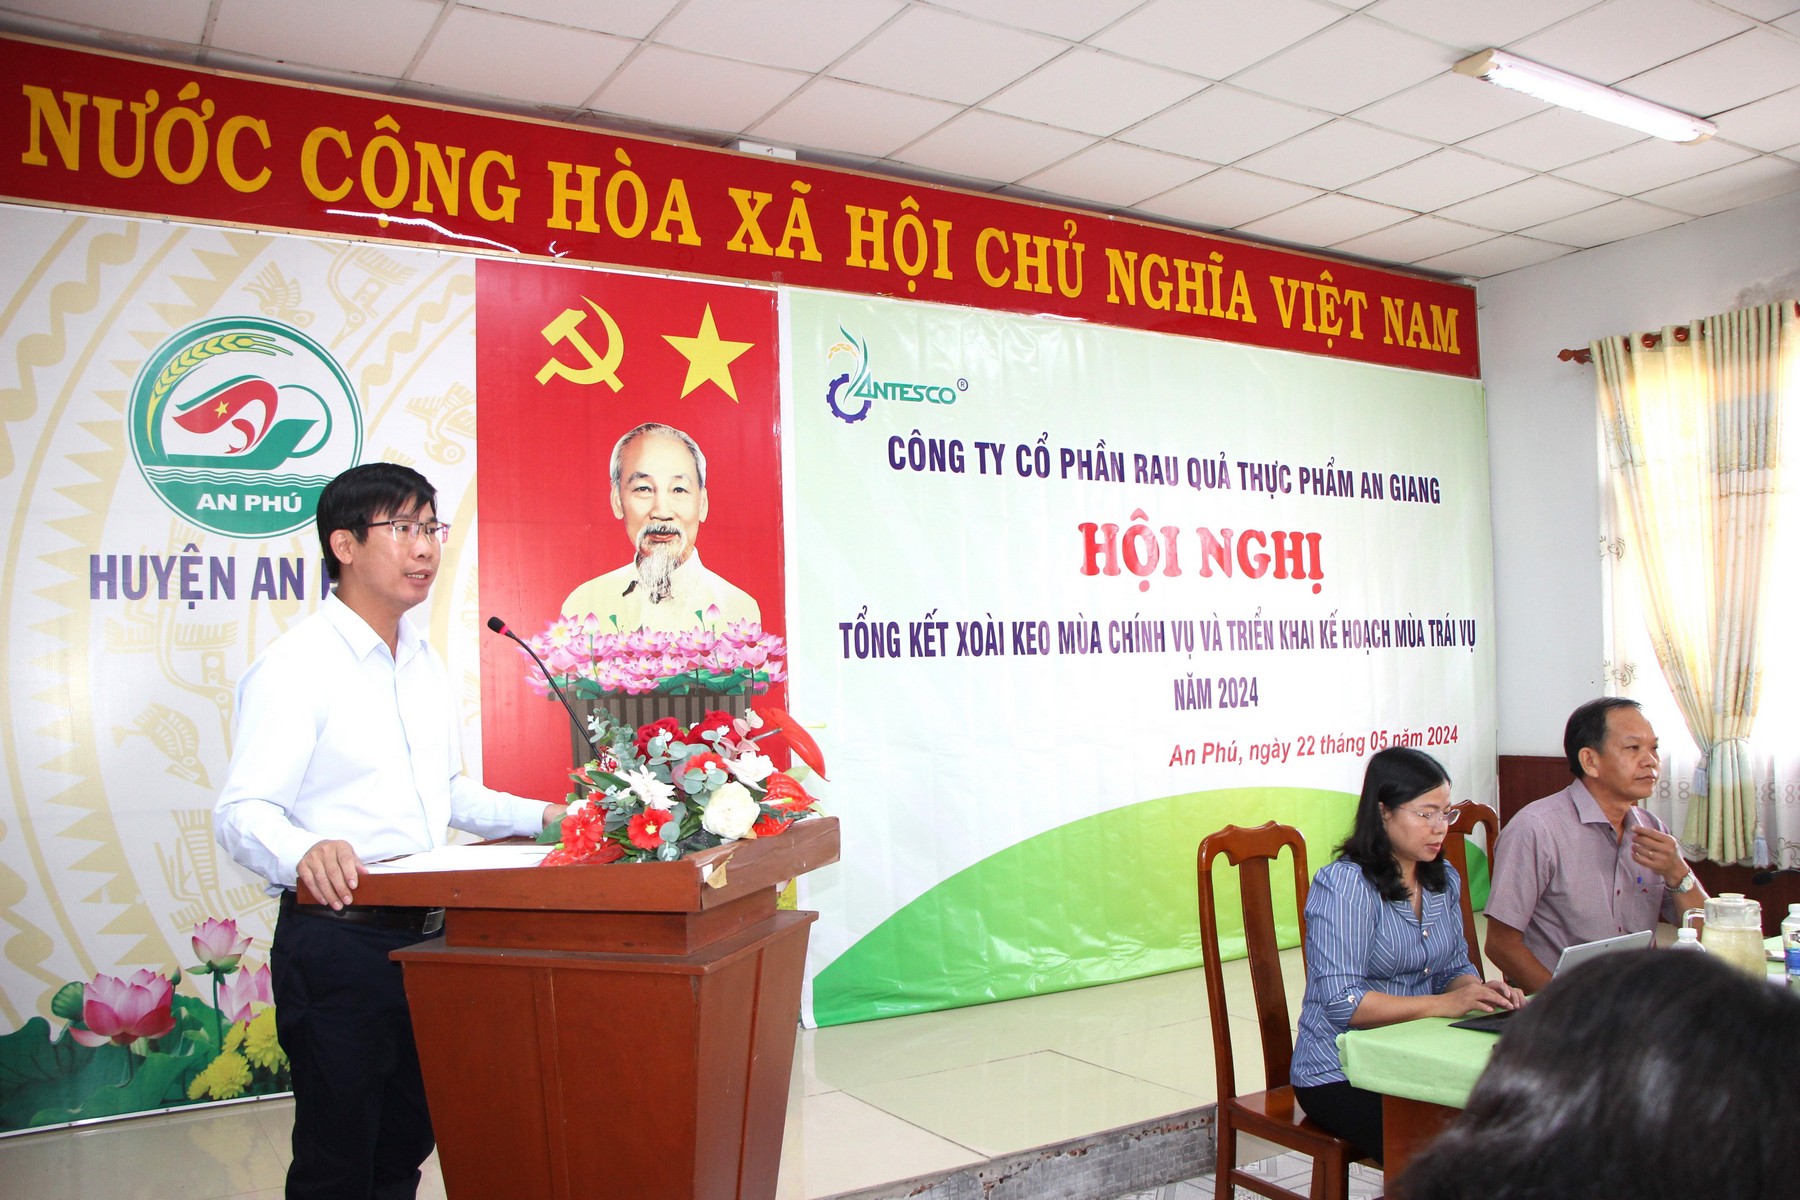 Tổng Giám đốc Công ty Antesco Nguyễn Hoàng Minh phát biểu về liên kết của công ty trong thời gian tới